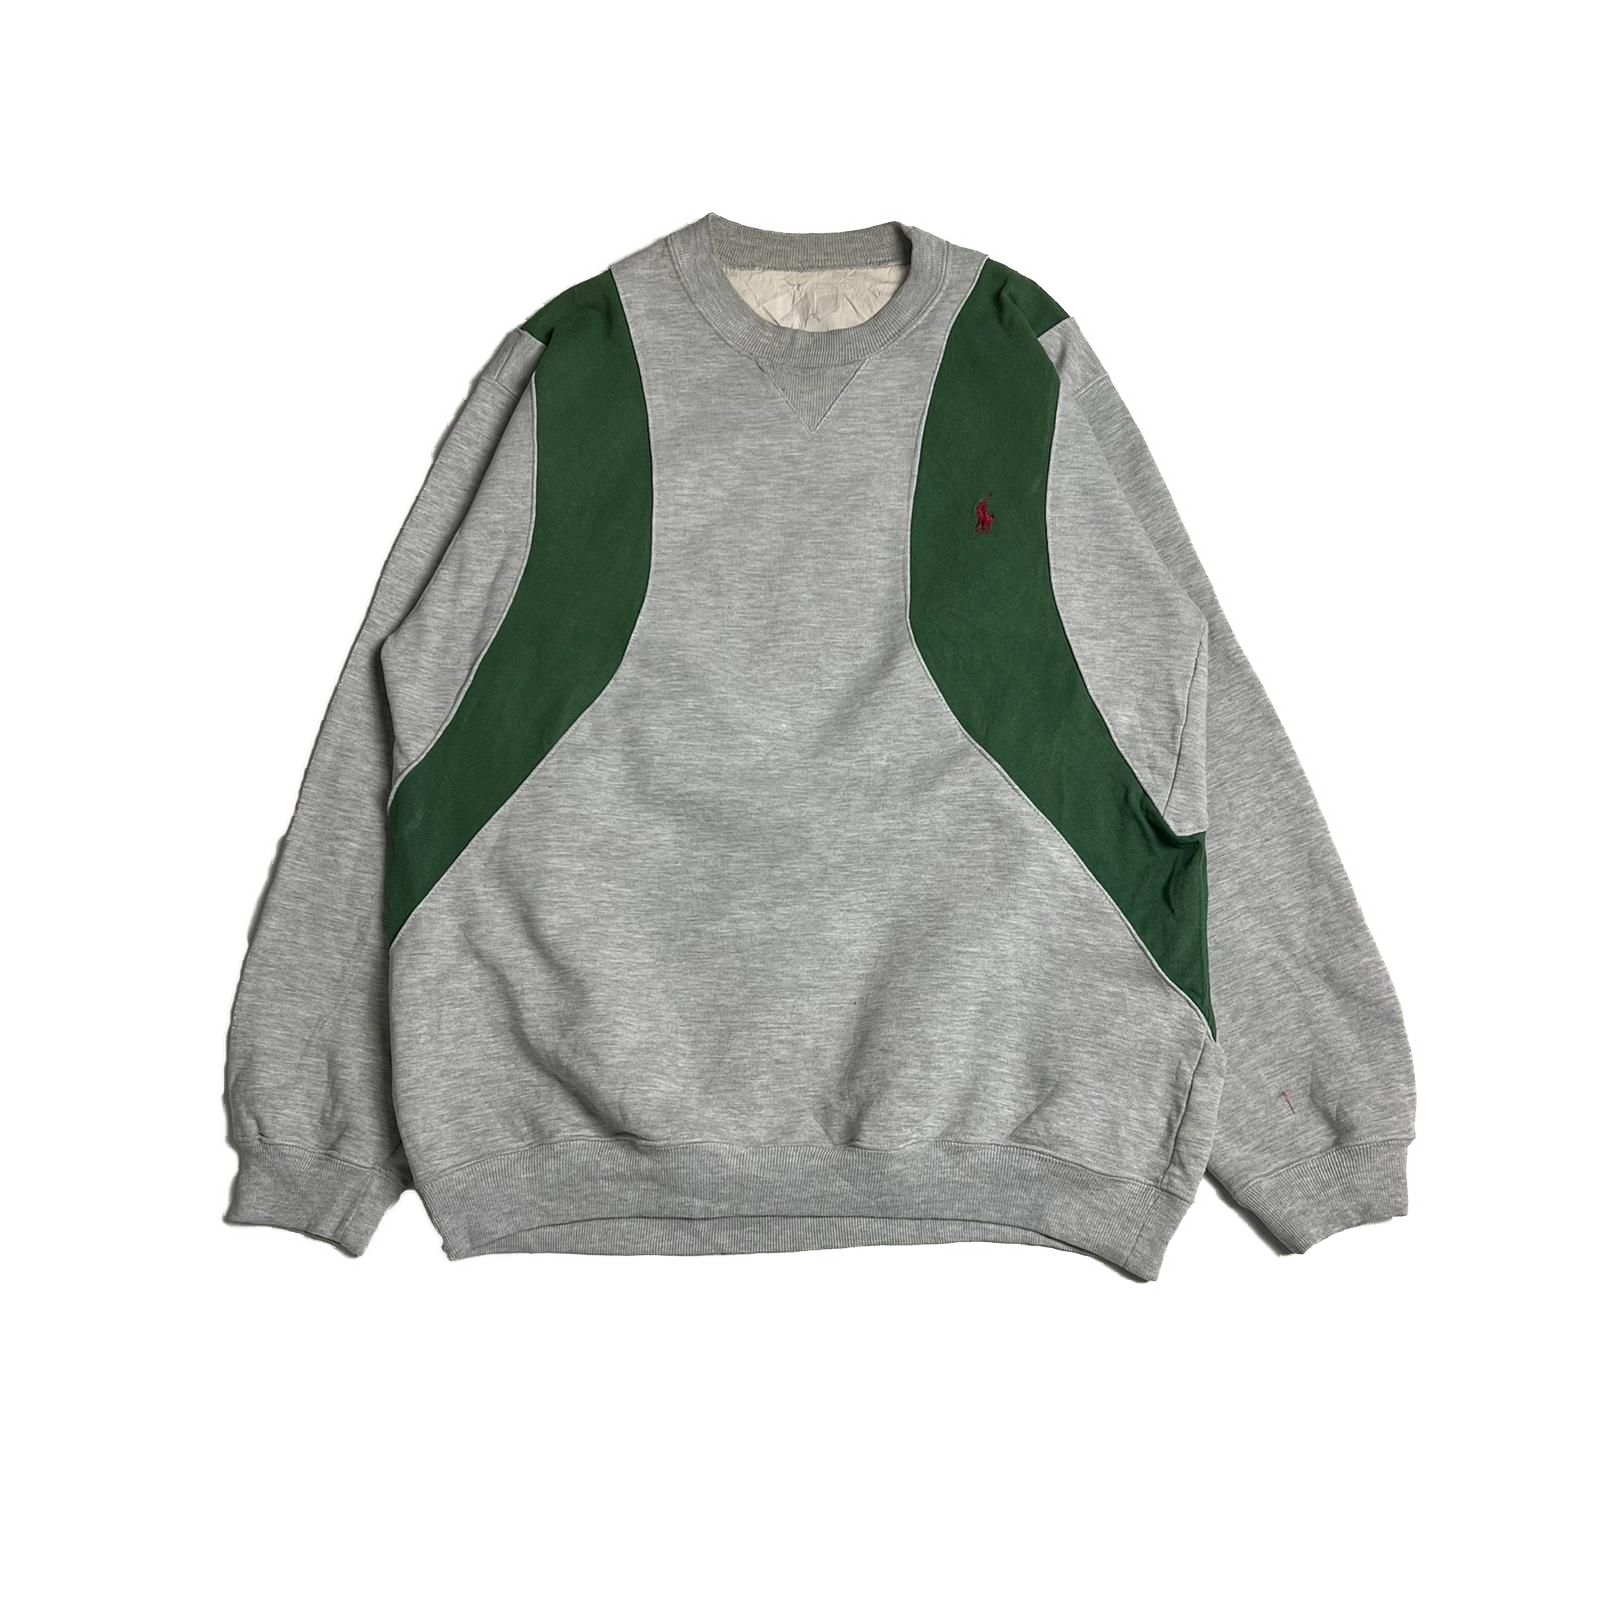 Reworked Ralph Lauren sweatshirt